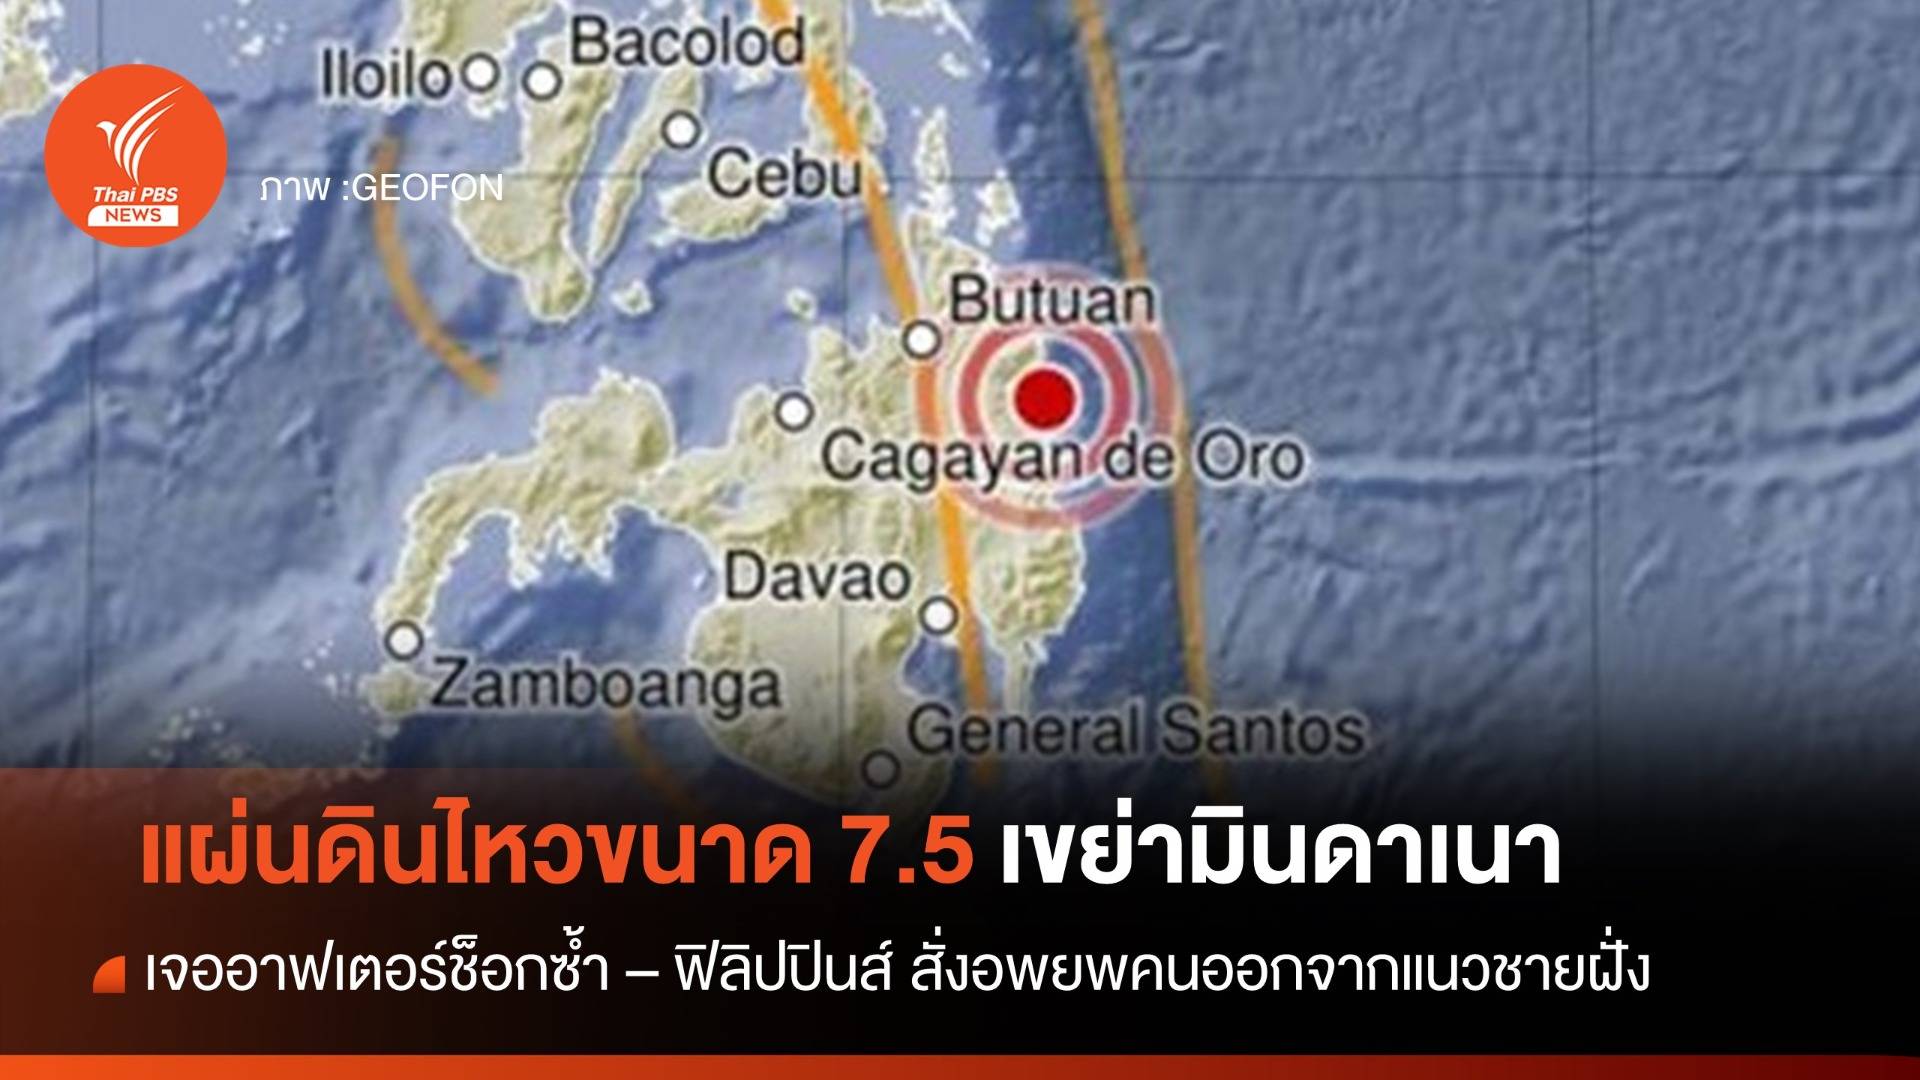 แผ่นดินไหวขนาด 7.5 เขย่ามินดาเนา เกิดอาฟเตอร์ช็อกซ้ำ